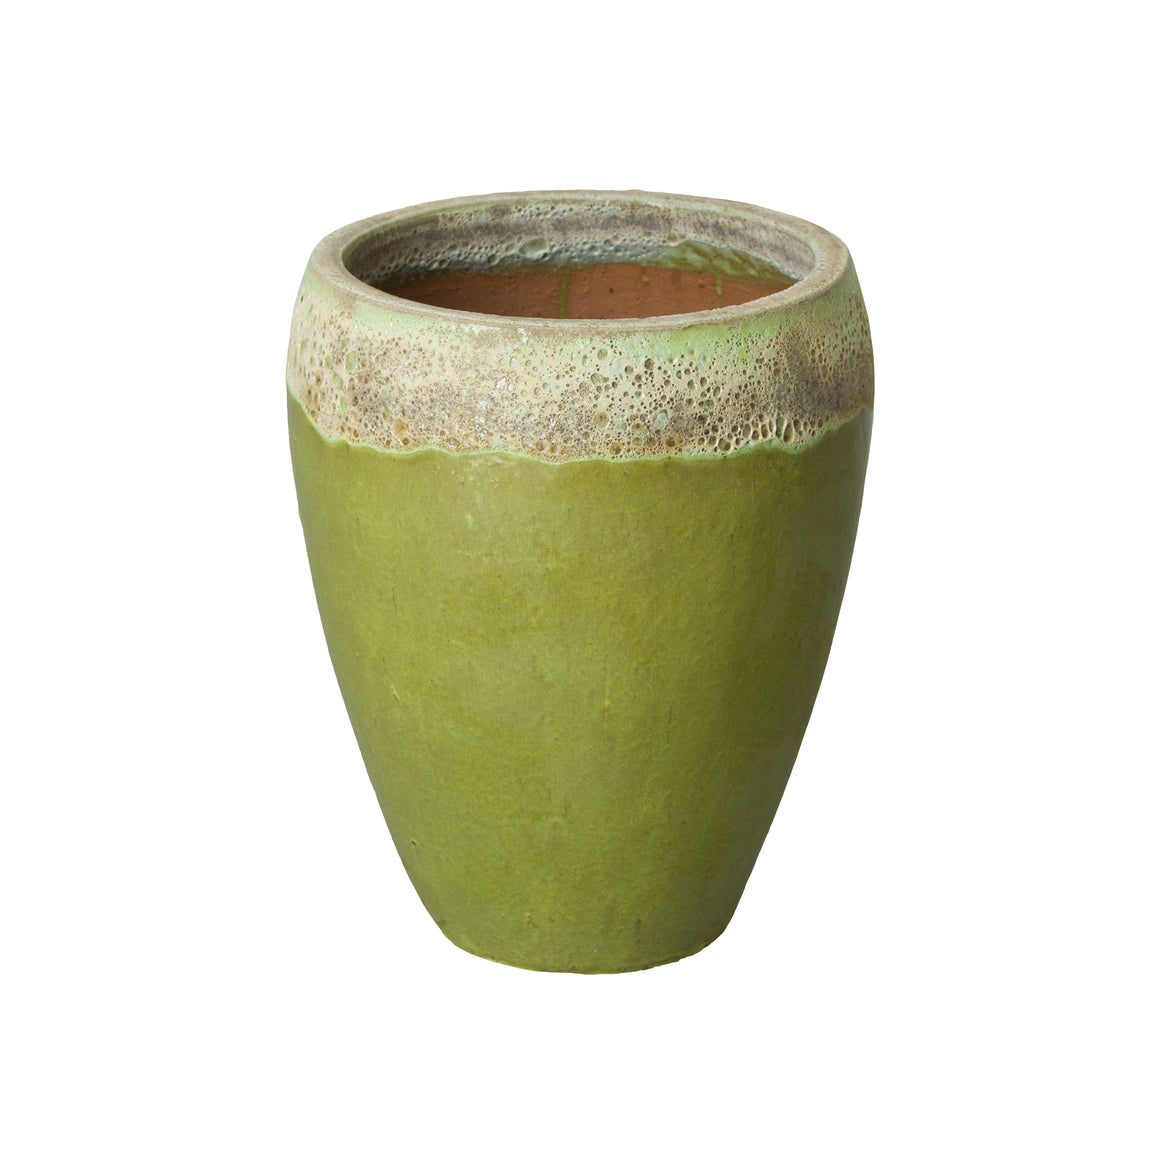 Medium Round Ceramic Planter with a Reef/Lime Glaze